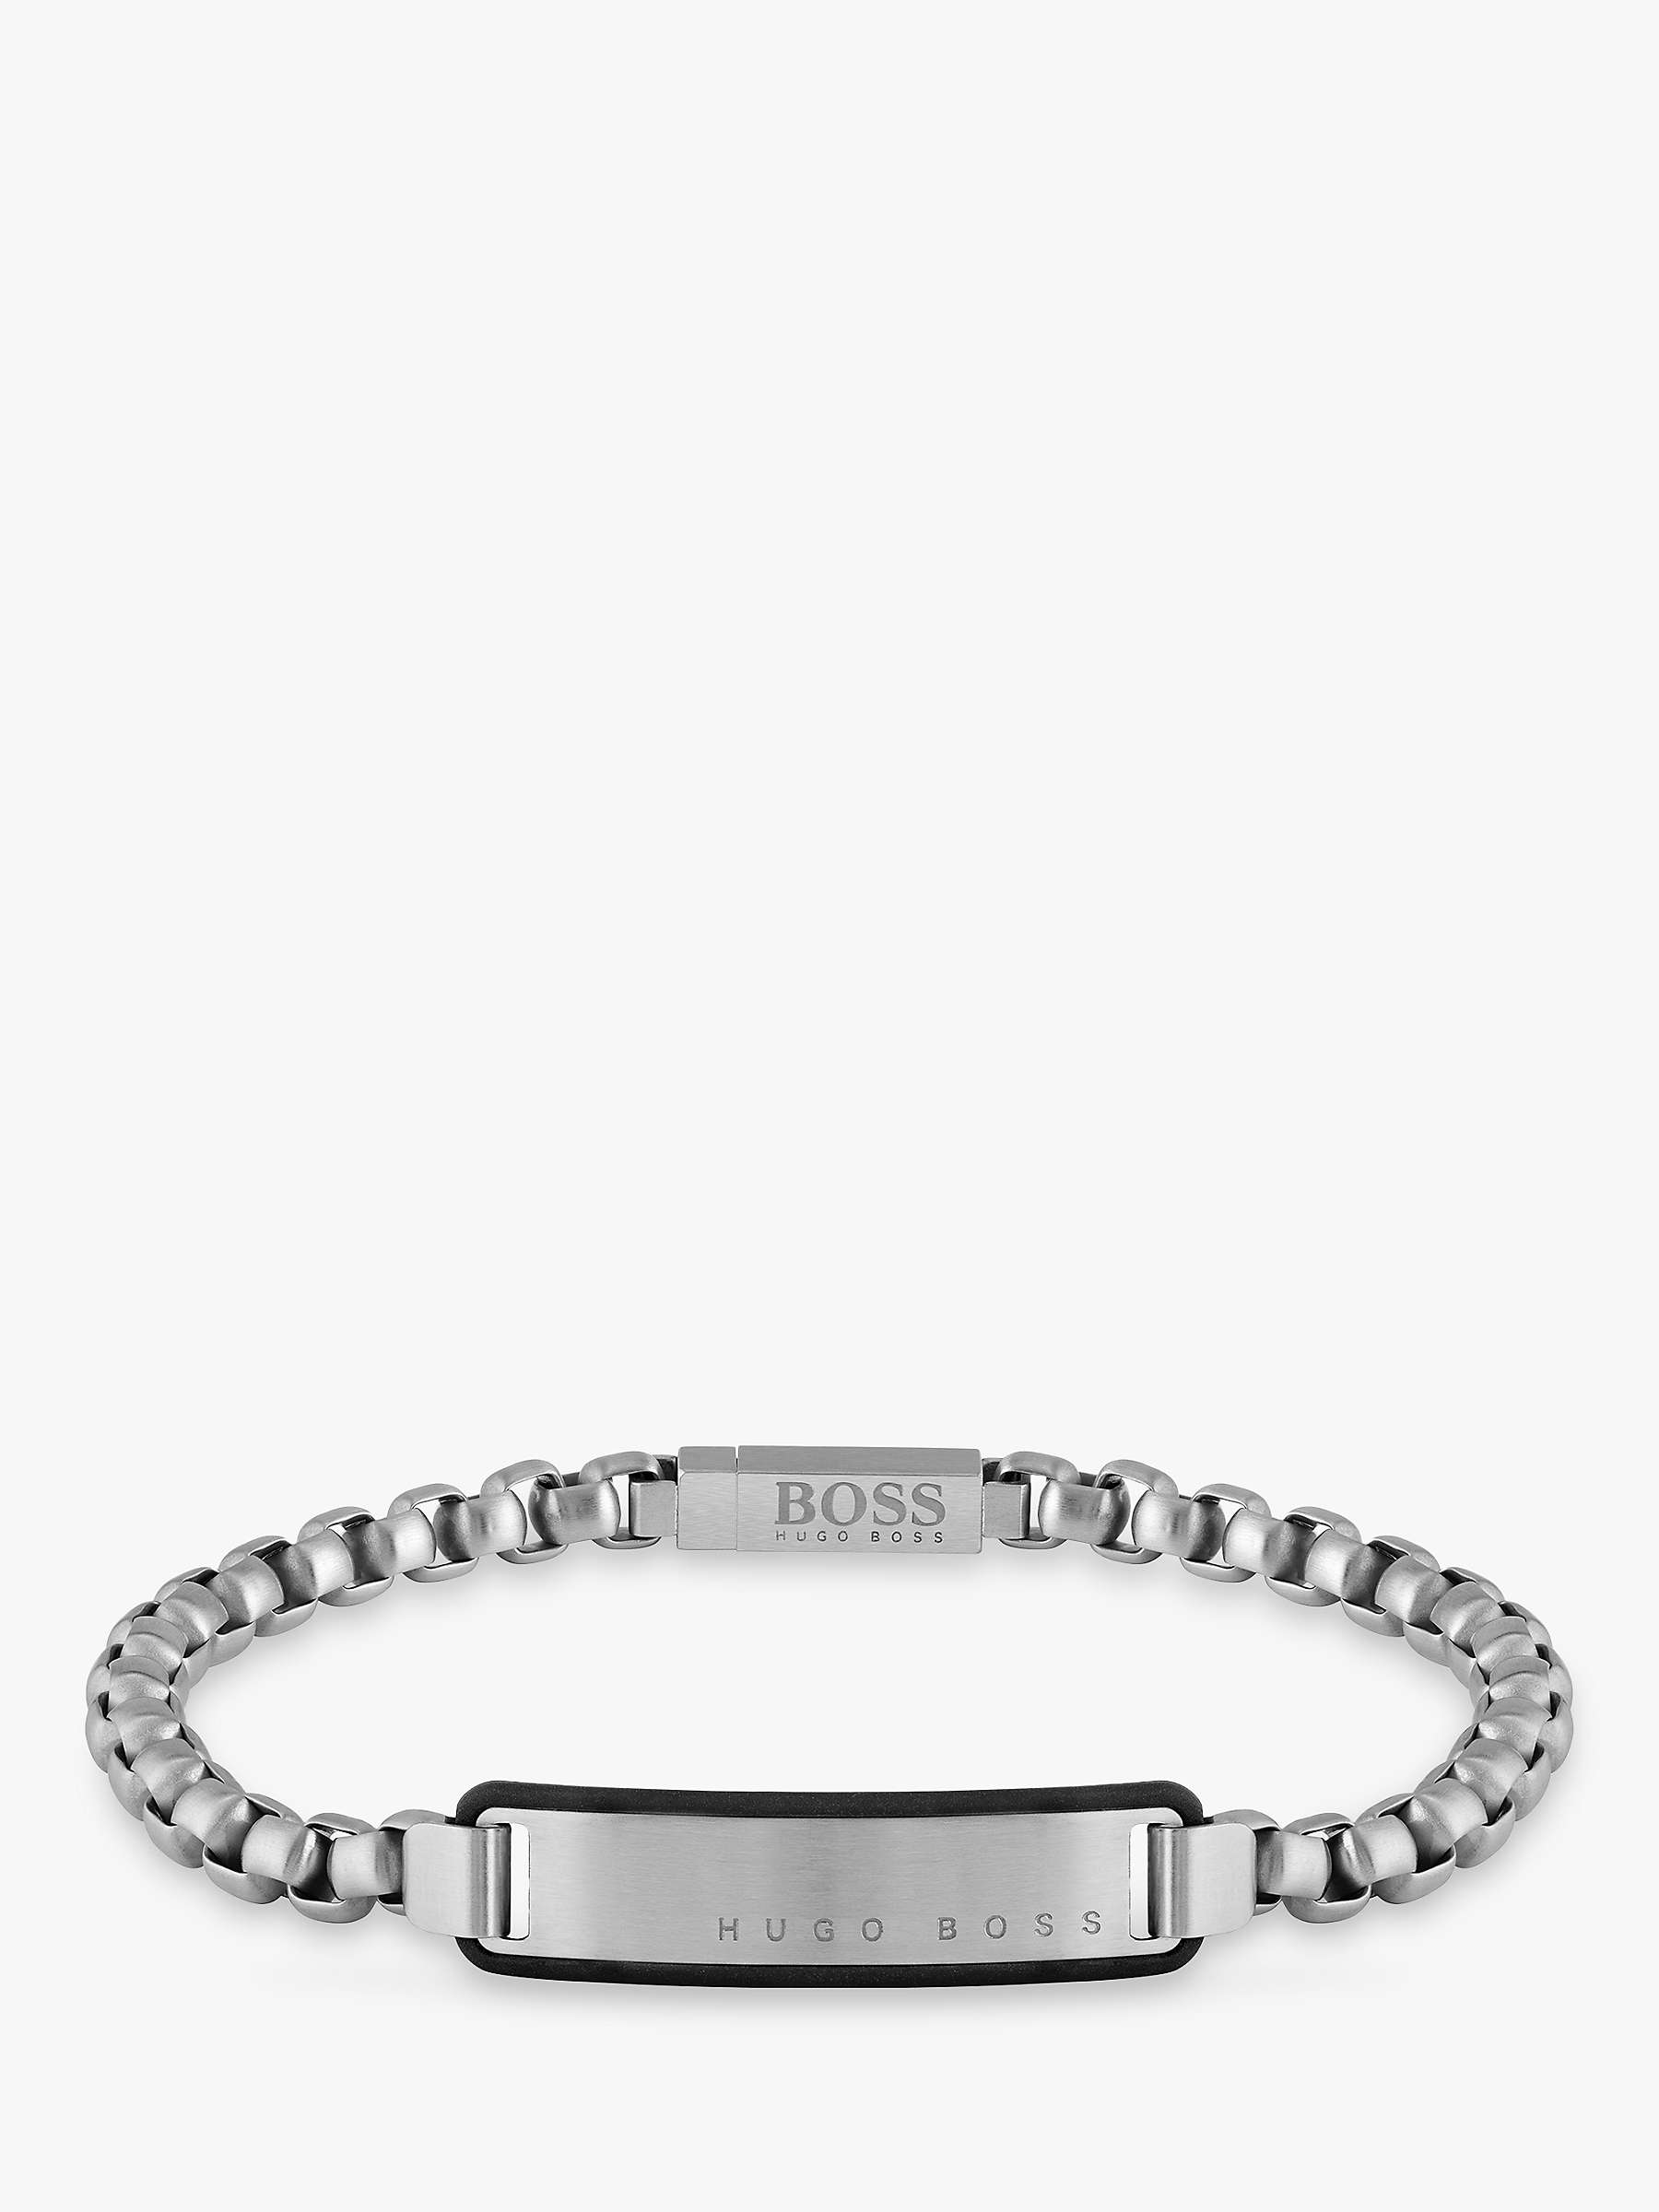 Buy BOSS Men's Logo Chain Bracelet, Silver Online at johnlewis.com